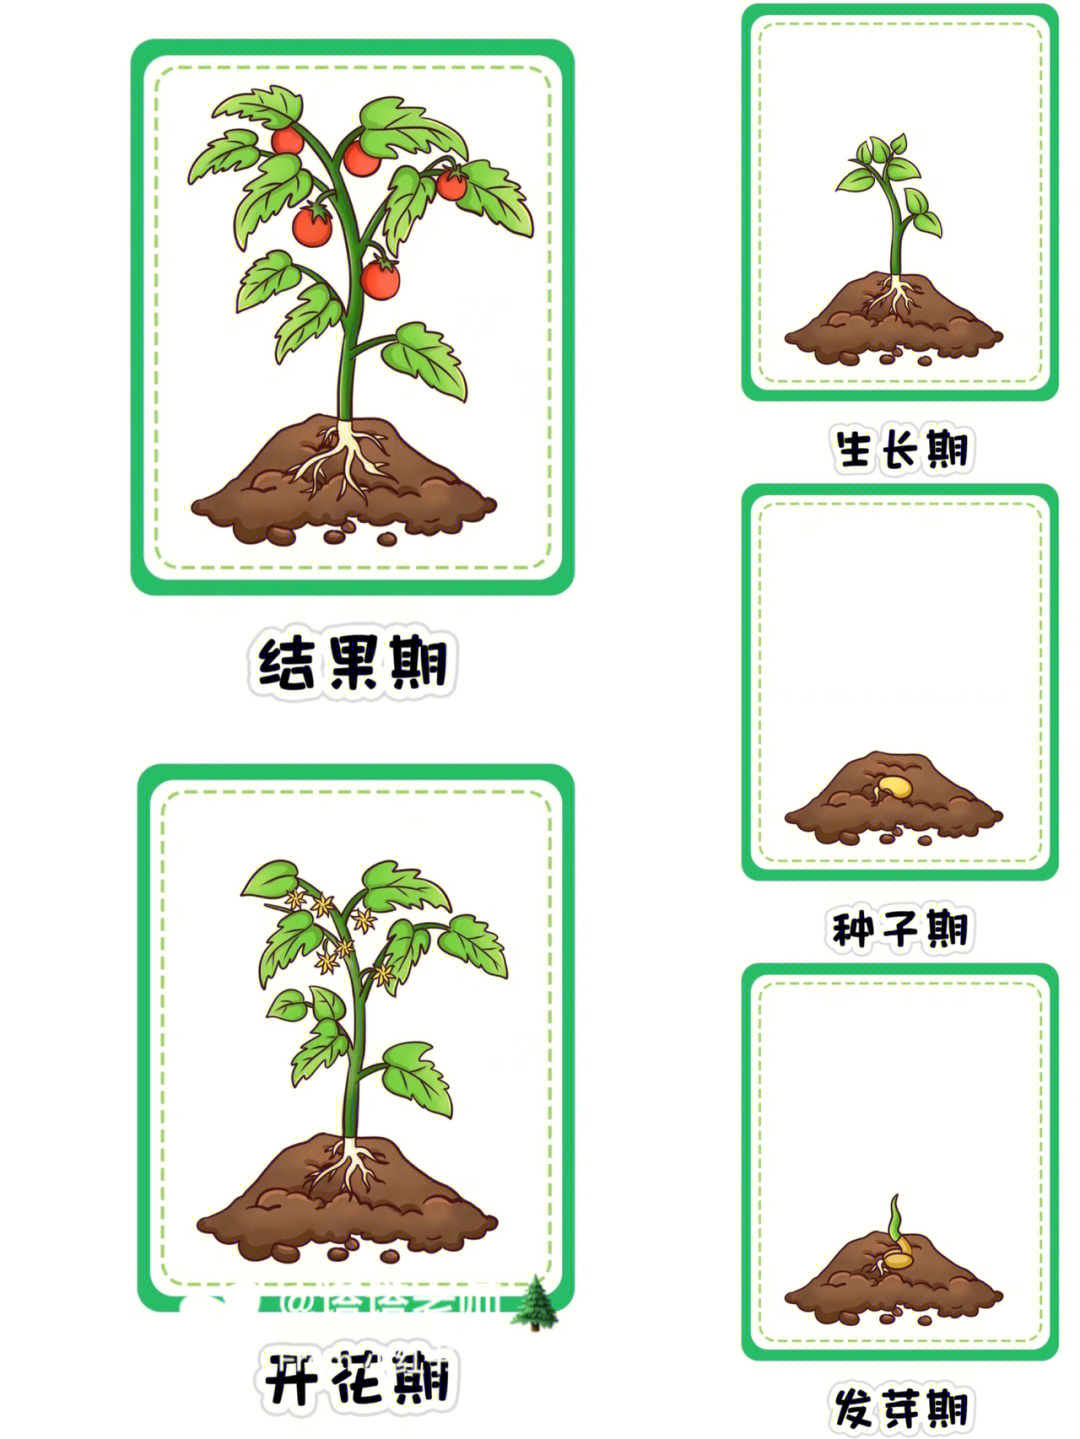 种子种植步骤图图片